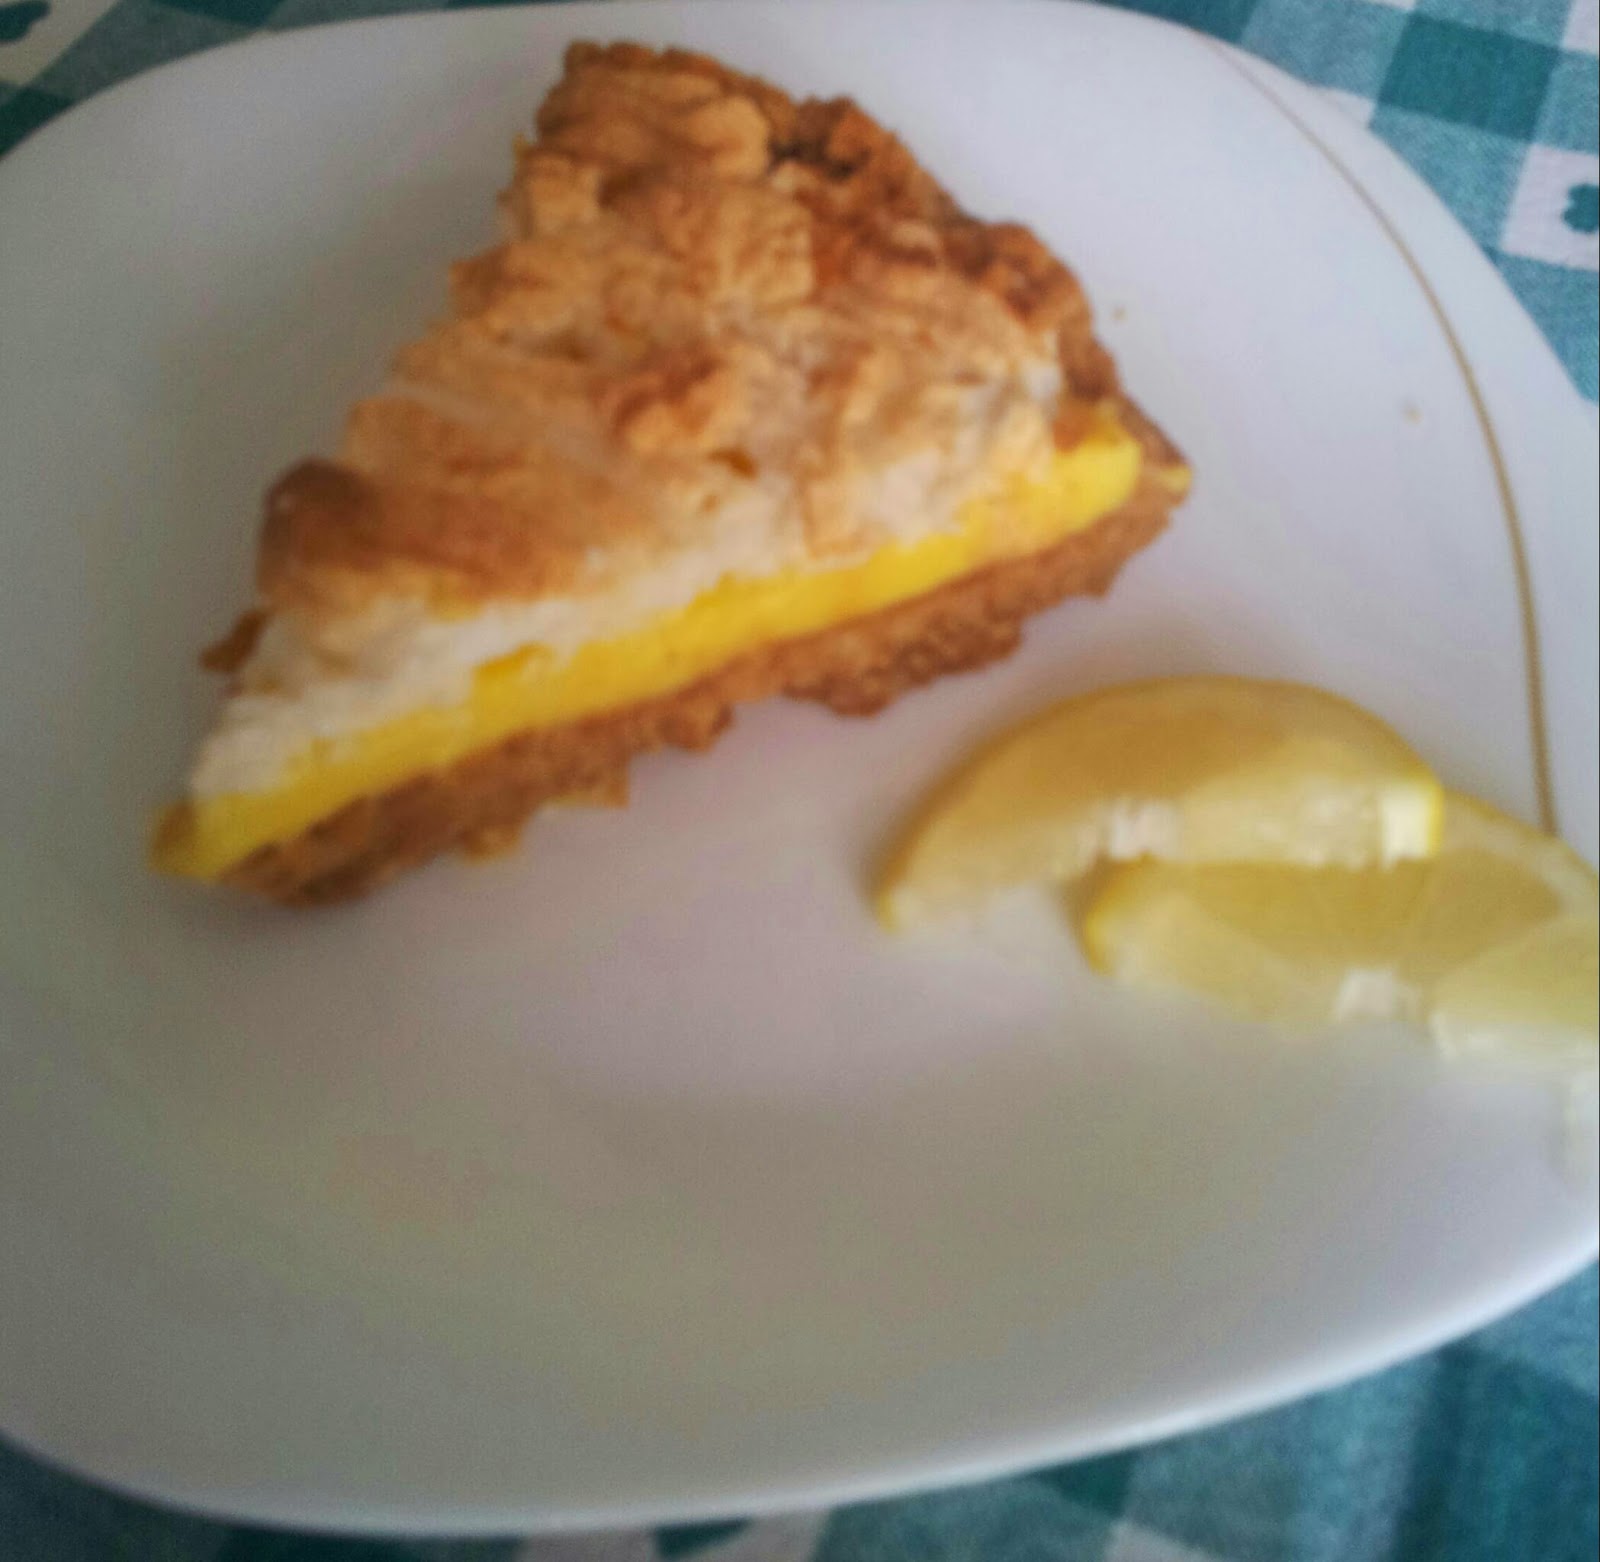 Lemon meringue pie veloce di Benedetta Parodi | Unpizzichinodisale blog di  Annalisa Parma